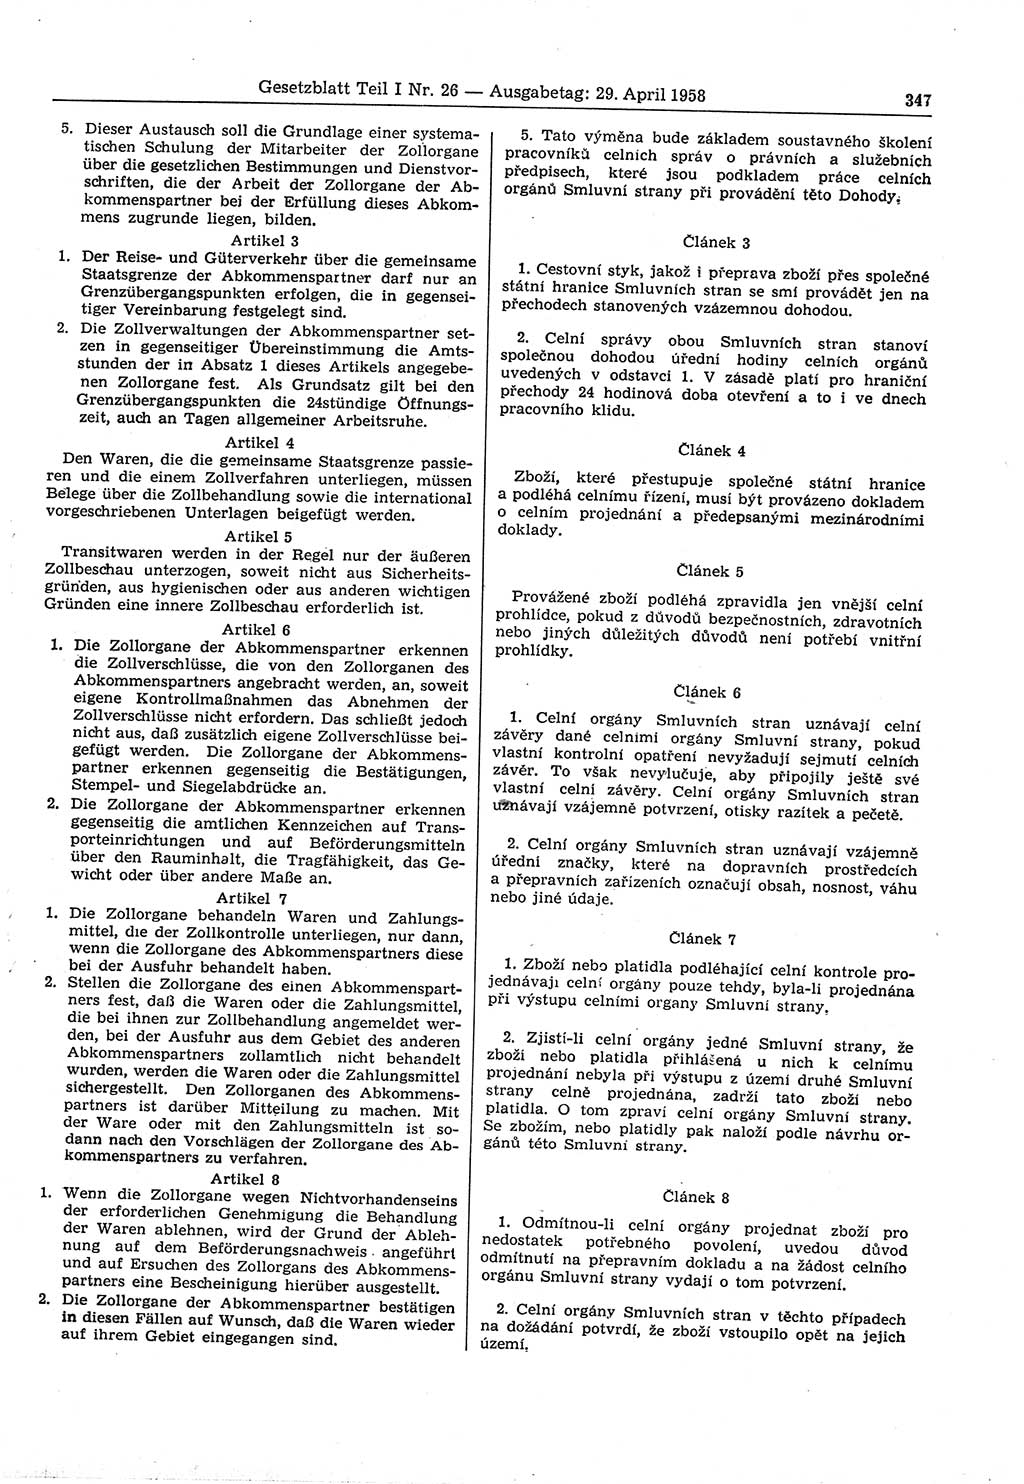 Gesetzblatt (GBl.) der Deutschen Demokratischen Republik (DDR) Teil Ⅰ 1958, Seite 347 (GBl. DDR Ⅰ 1958, S. 347)